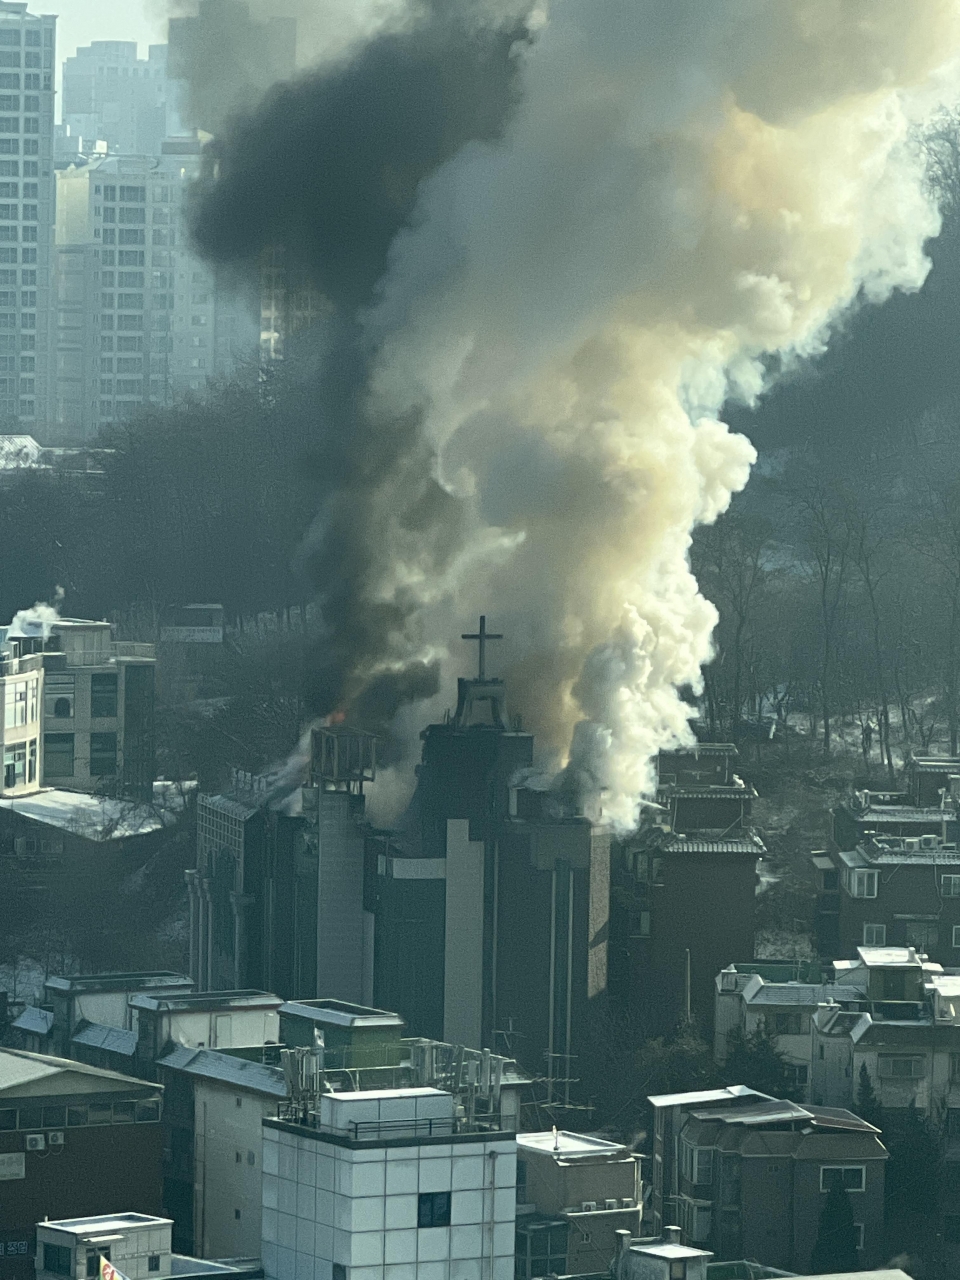 ▲ 20일 오전 9시 16분께 경기 남양주시의 한 교회 건물에서 불이나 연기가 치솟고 있다. 불은 약 1시간 만에 꺼졌으며, 해당 건물은 현재 사용하지 않고 비어 있어 인명피해는 없었다. ⓒ 연합뉴스